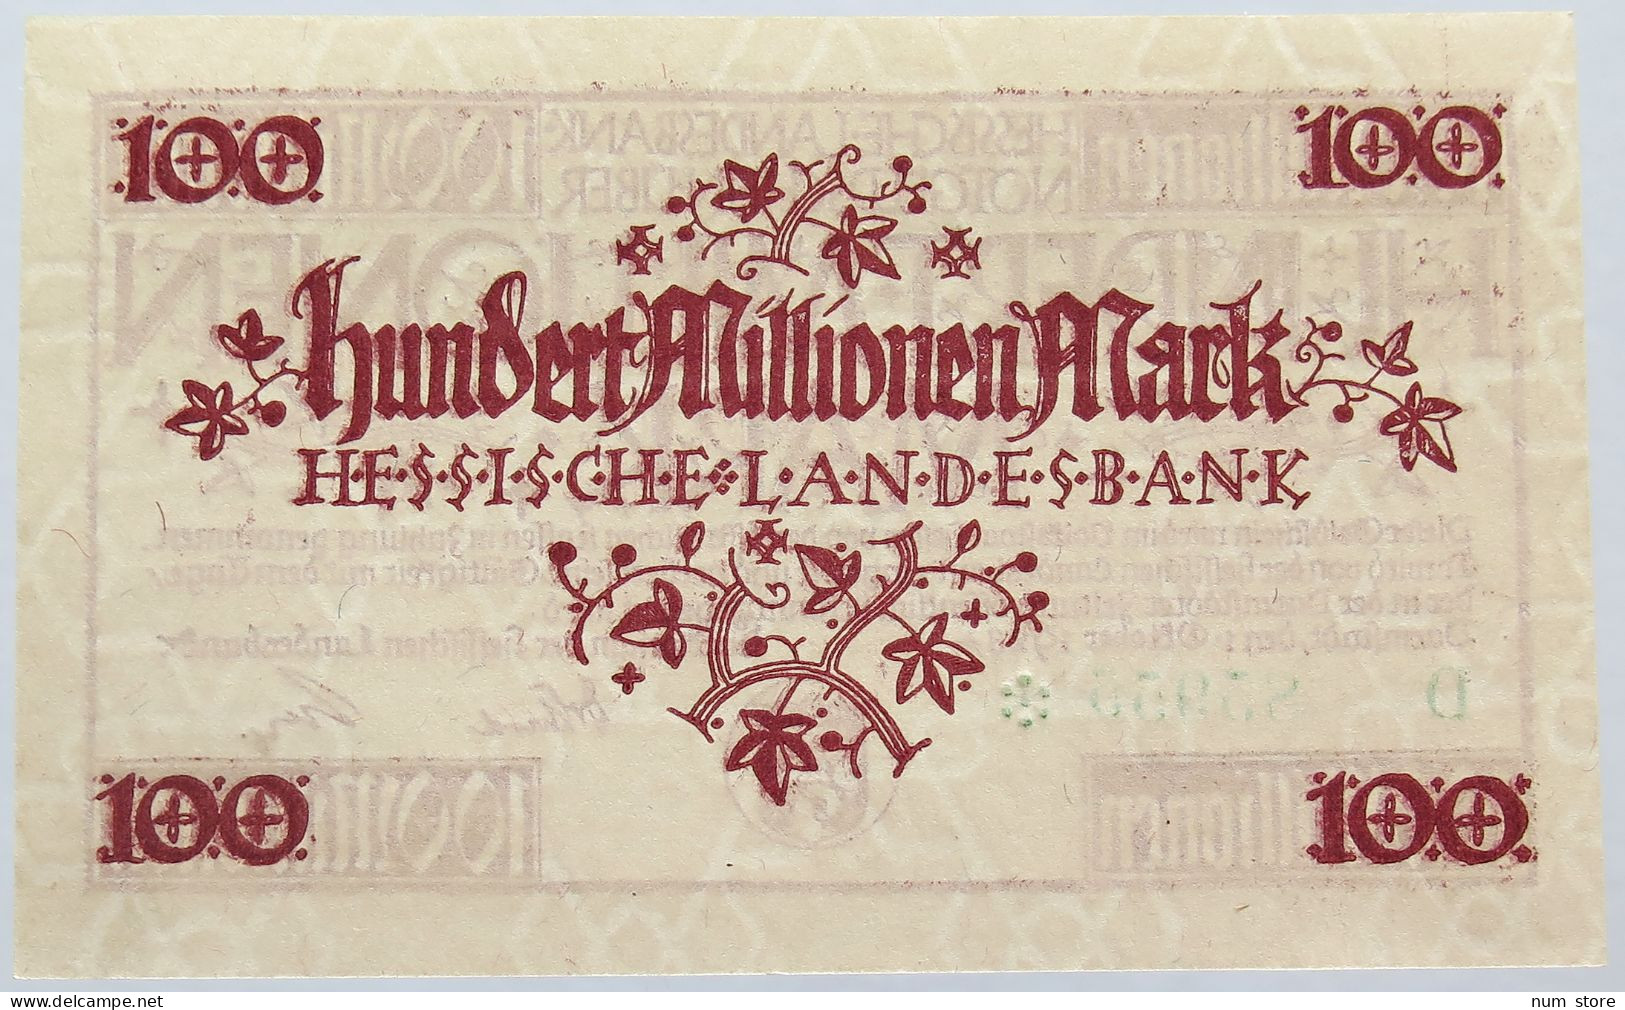 GERMANY 100 MILLIONEN MARK 1923 HESSEN #alb004 0145 - 100 Millionen Mark